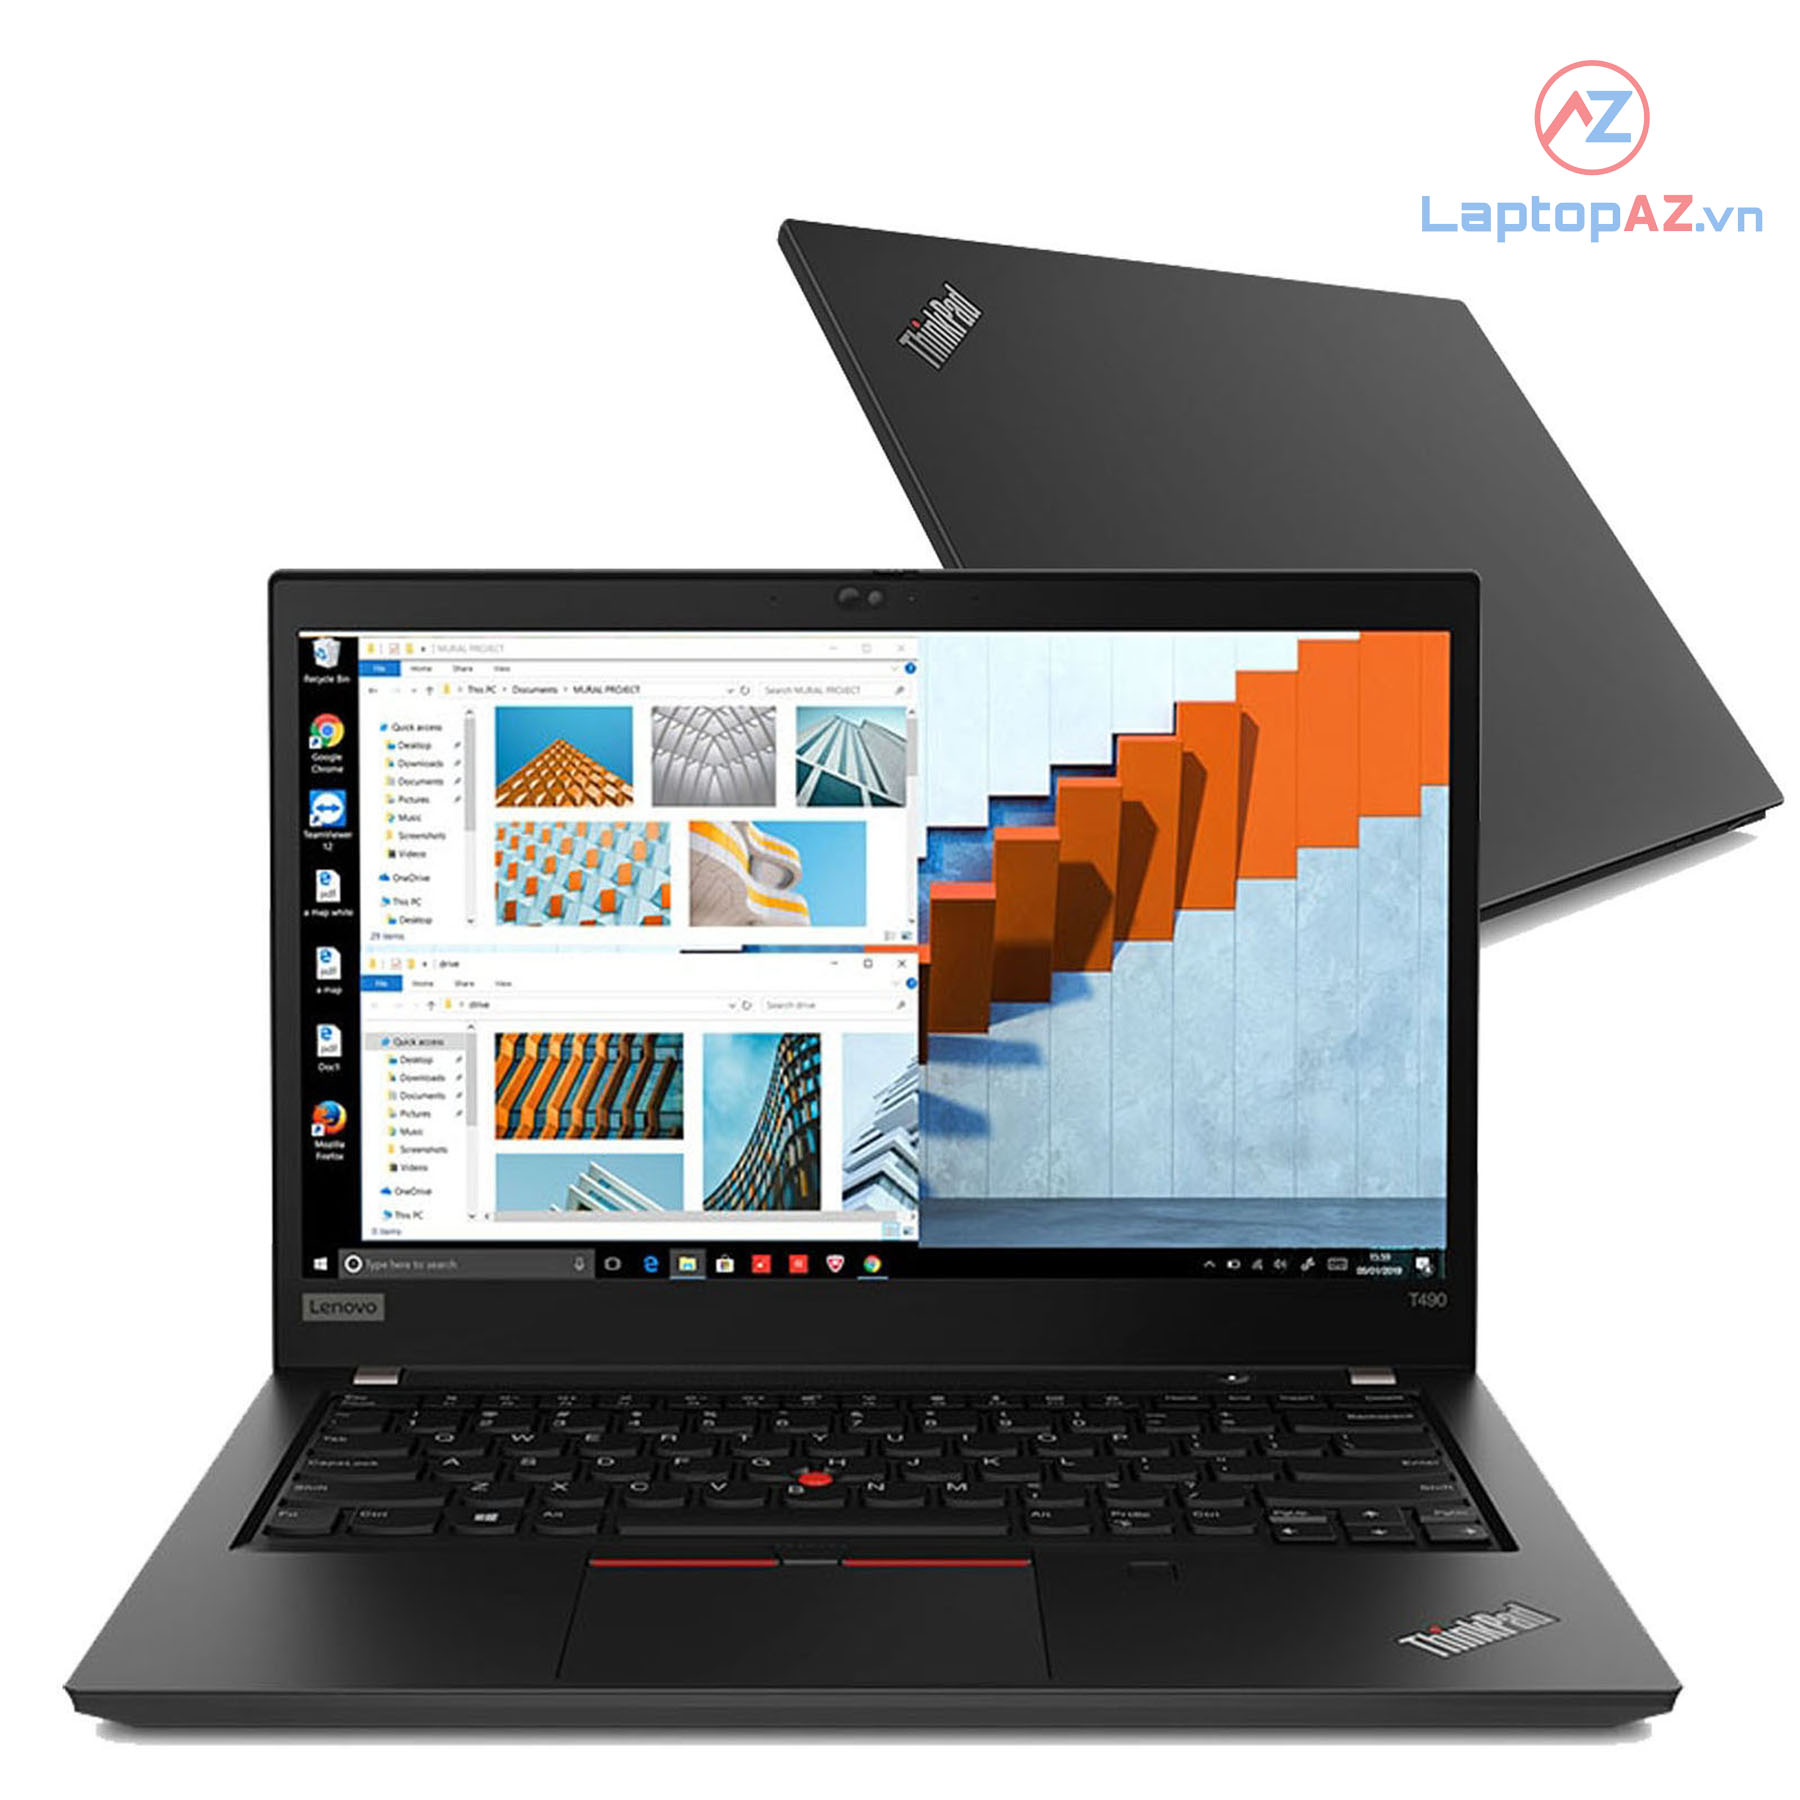 ThinkPad T490 (Intel Core i5-10210U, 8GB, 256GB, Intel UHD Graphics, 14 FHD IPS)